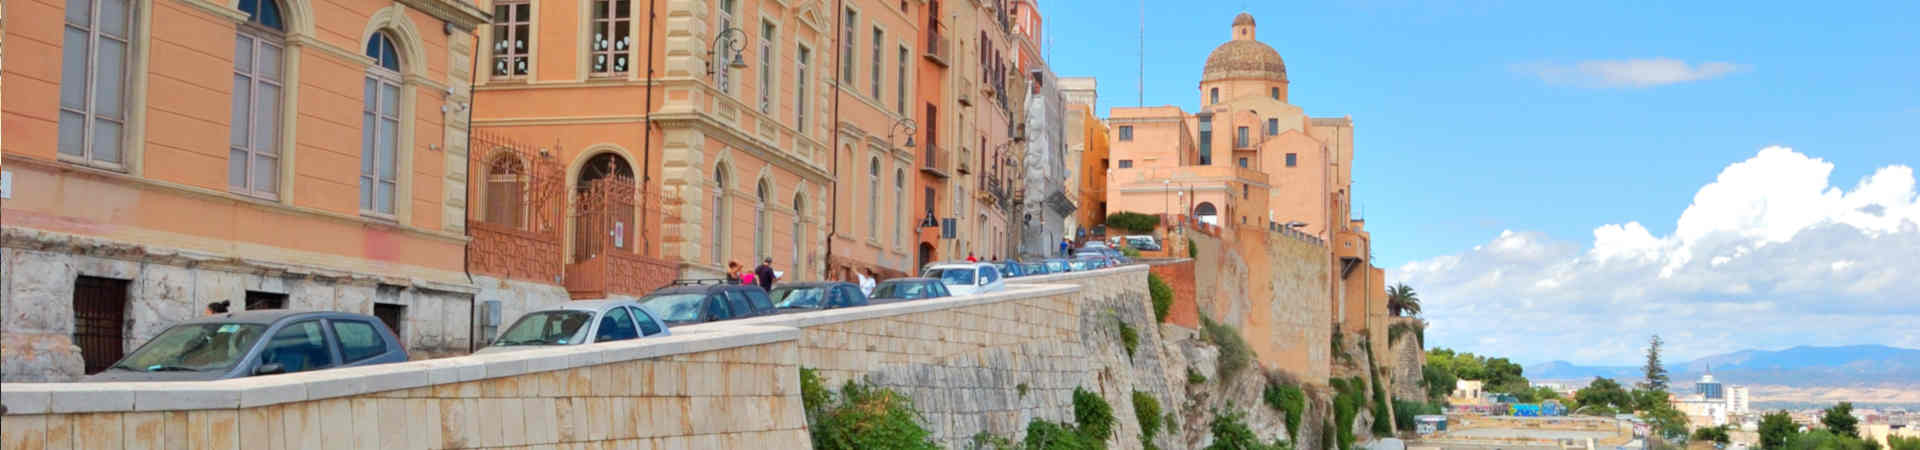 Immagine del porto di arrivo Cagliari per la rotta traghetto Palermo (Città) - Cagliari